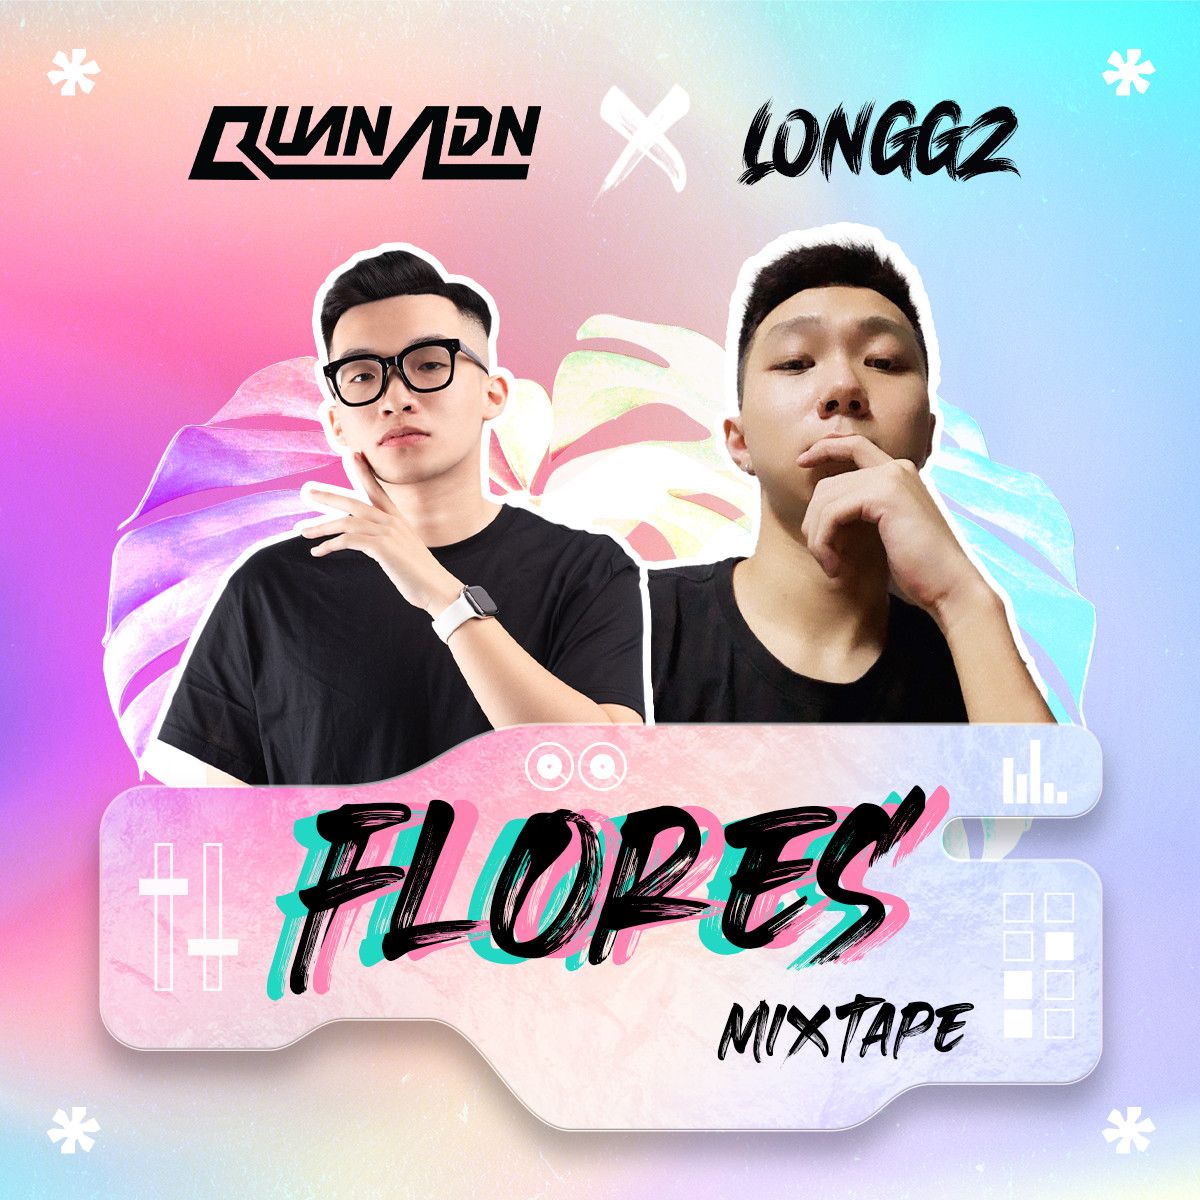 Завантажити Mixtape - Flores by Quan ADN & LONGGZ